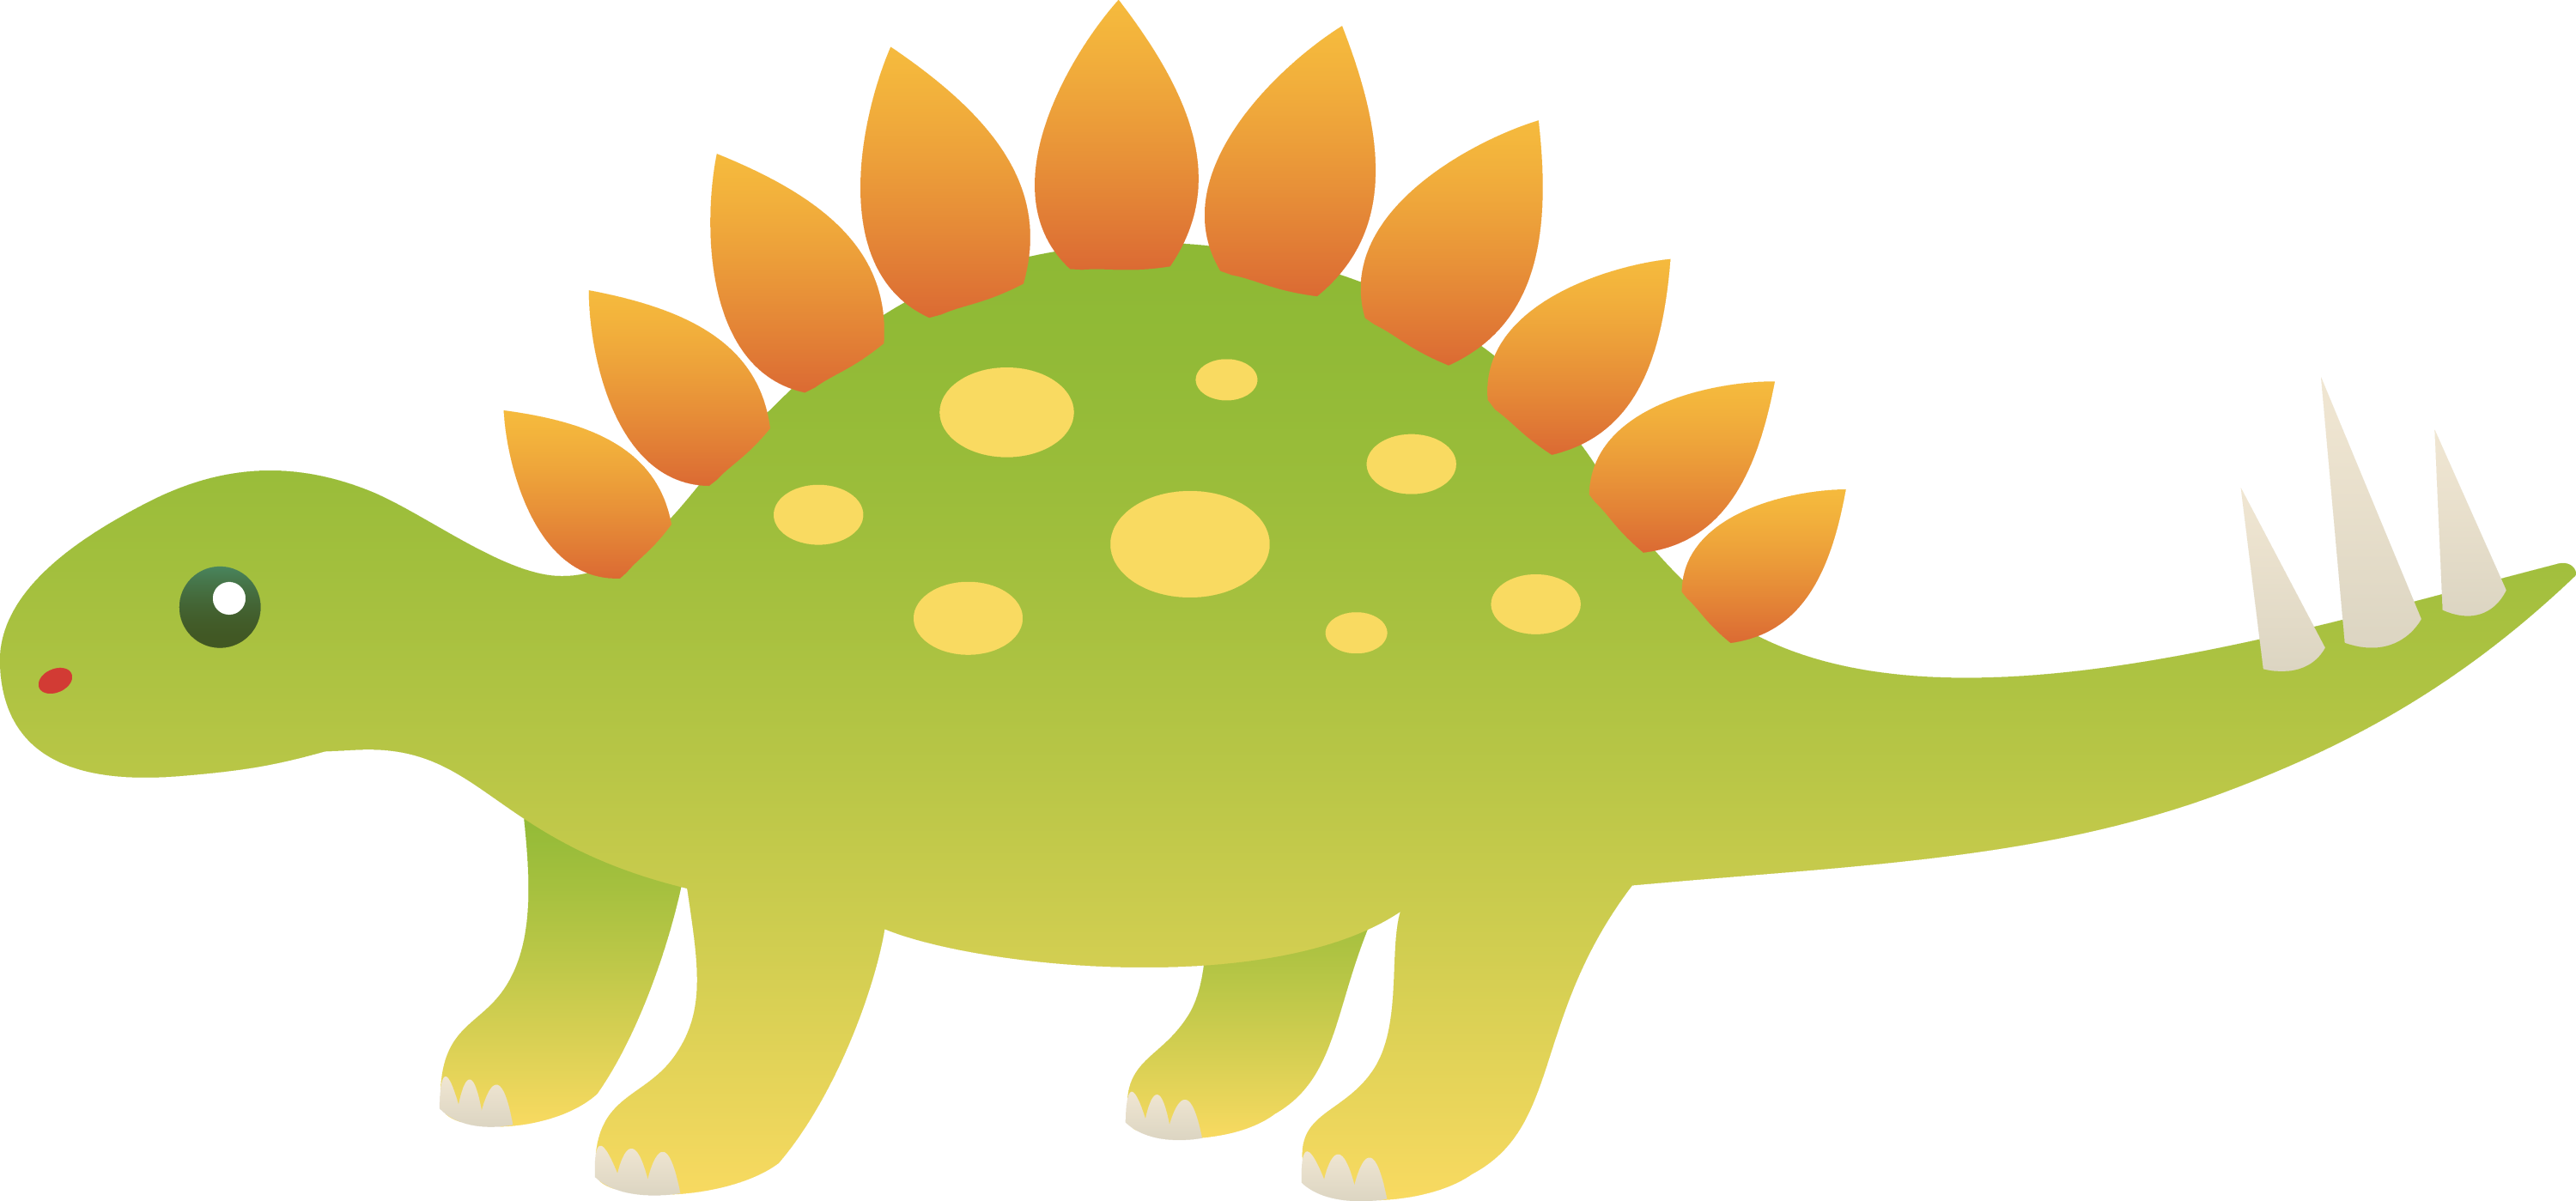 Cute Stegosaurus Dinosaur Free Clip Art